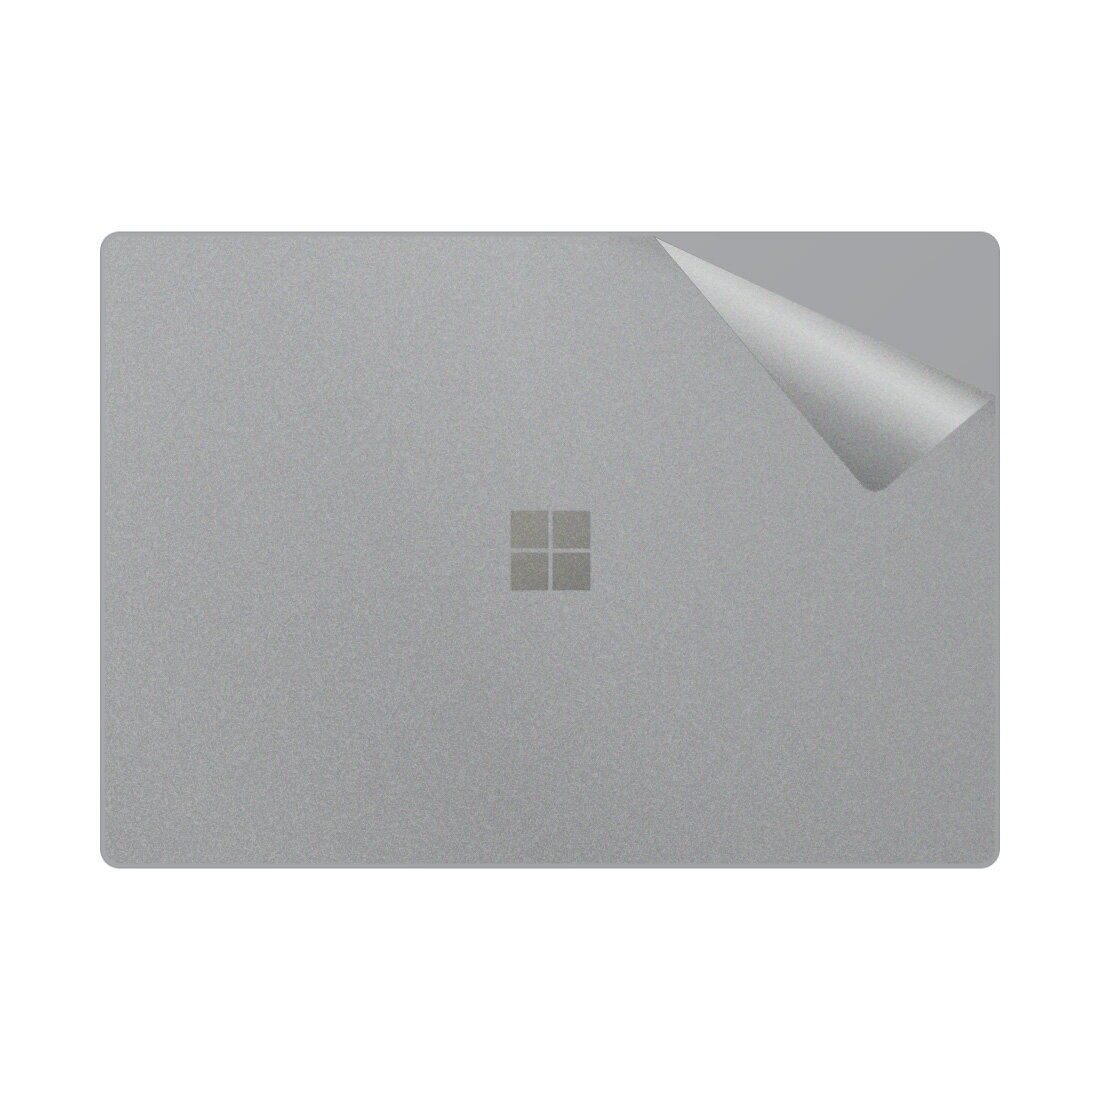 スキンシール サーフェス Surface Laptop 3 (15インチ)(2019年10月発売モデル) 【透明・すりガラス調】..